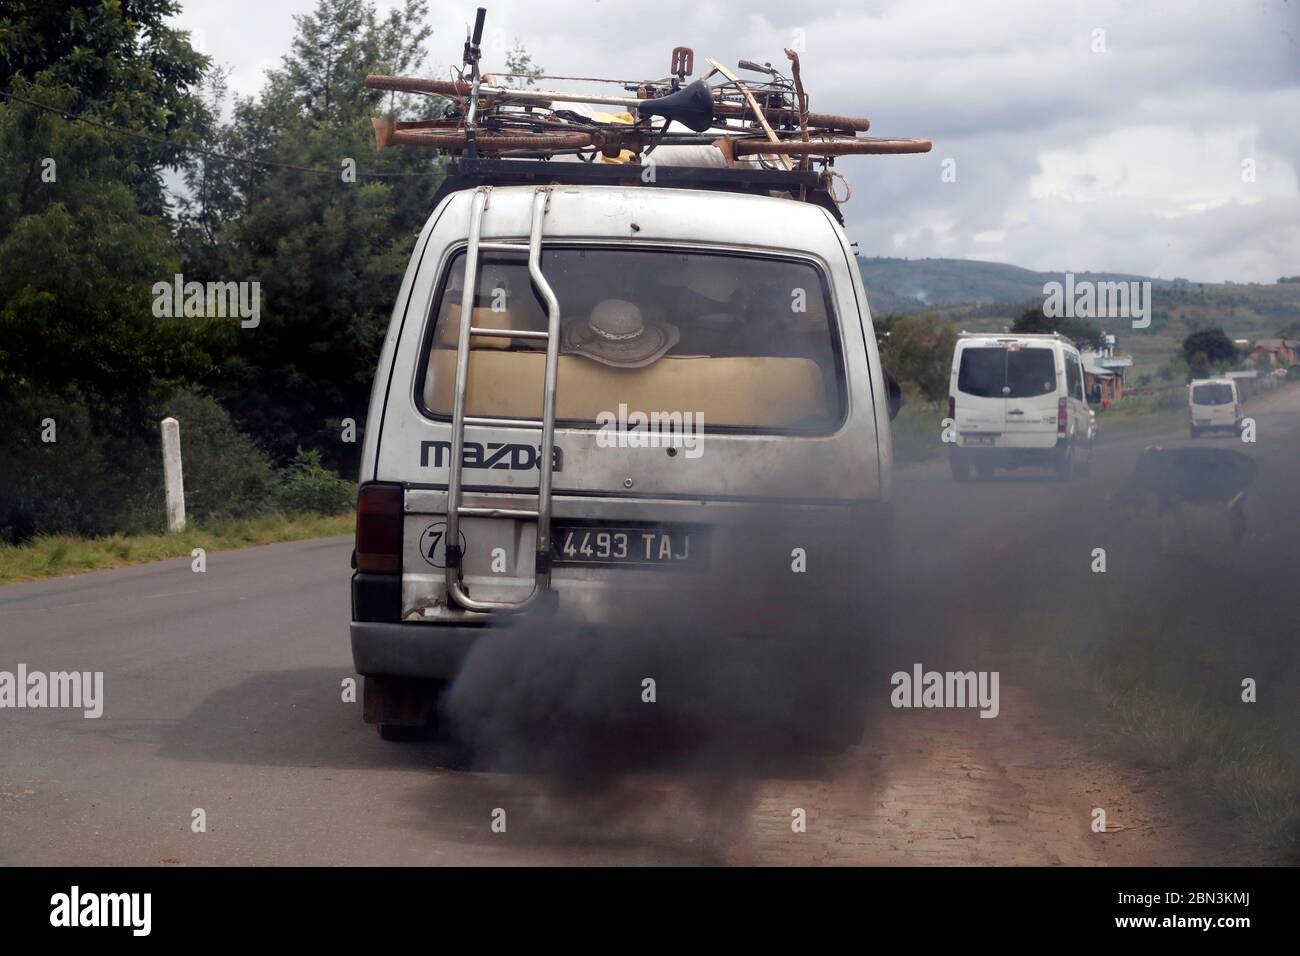 Vieux minibus émettant de la fumée noire sur la route. Pollution. Antsirabe. Madagascar. Banque D'Images